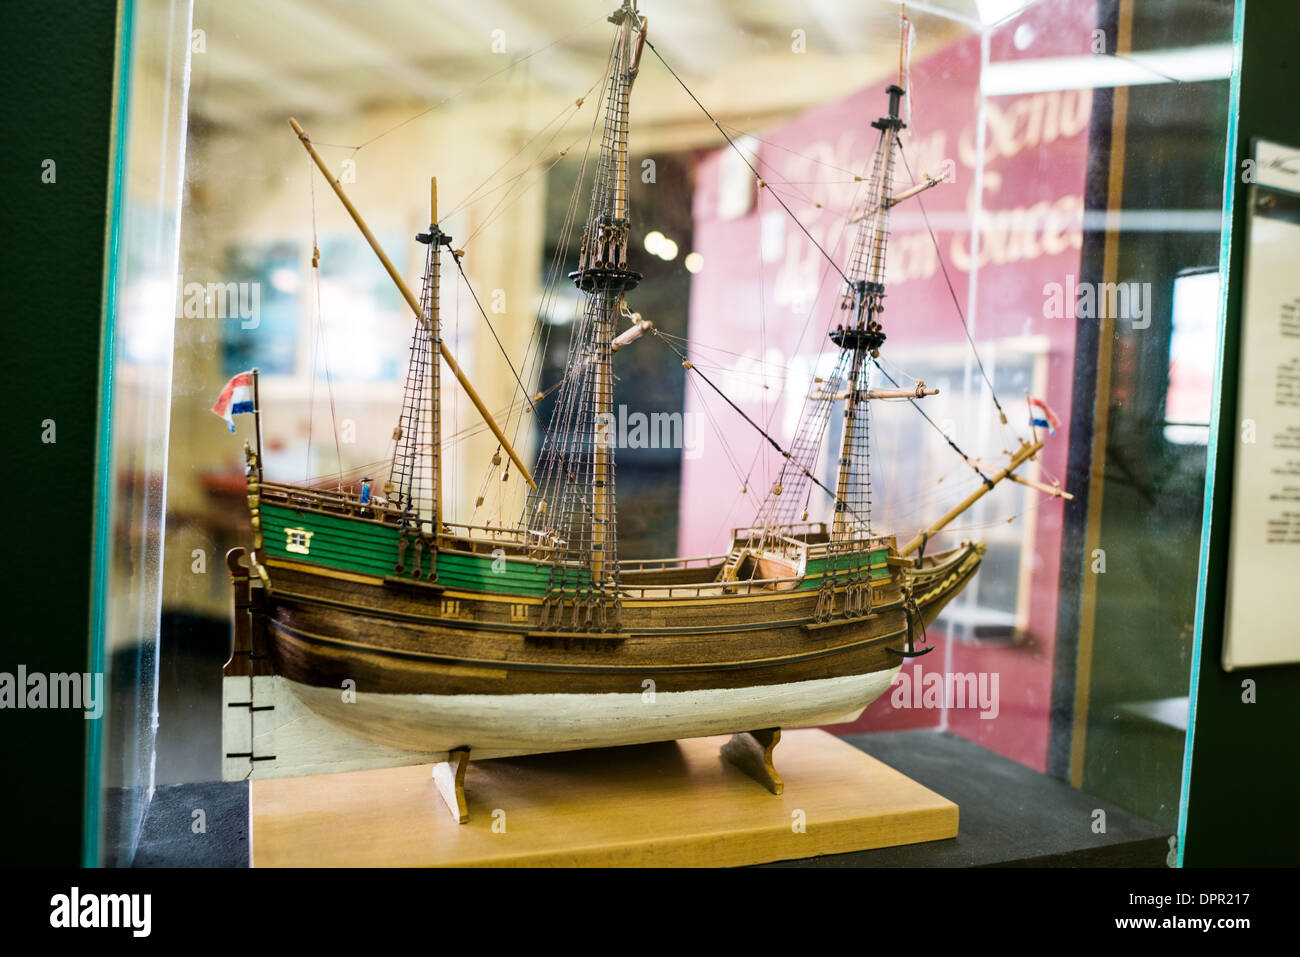 USHUAIA, Argentine - l'un des nombreux navires modèle construit avec précision sur l'affichage au Musée Maritime d'Ushuaia (Museo Marítimo de Ushuaia). C'est un modèle de l'Eendracht, un voilier de la carcasse type utilisé par les explorateurs hollandais Willem Schouten et Jacob Le Maire dans leur voyage de 1615-1616. Avec leurs coques rondes à clins et sterns, néerlandais barges étaient bien adaptées au transport de la charge et nécessitant relativement peu d'équipage, mais étaient mal adaptés à une utilisation dans les eaux tropicales chaudes où les méthodes de fabrication signifiait que les lacunes ouvert entre les planches en bois sous la chaleur d'un soleil tropical Banque D'Images